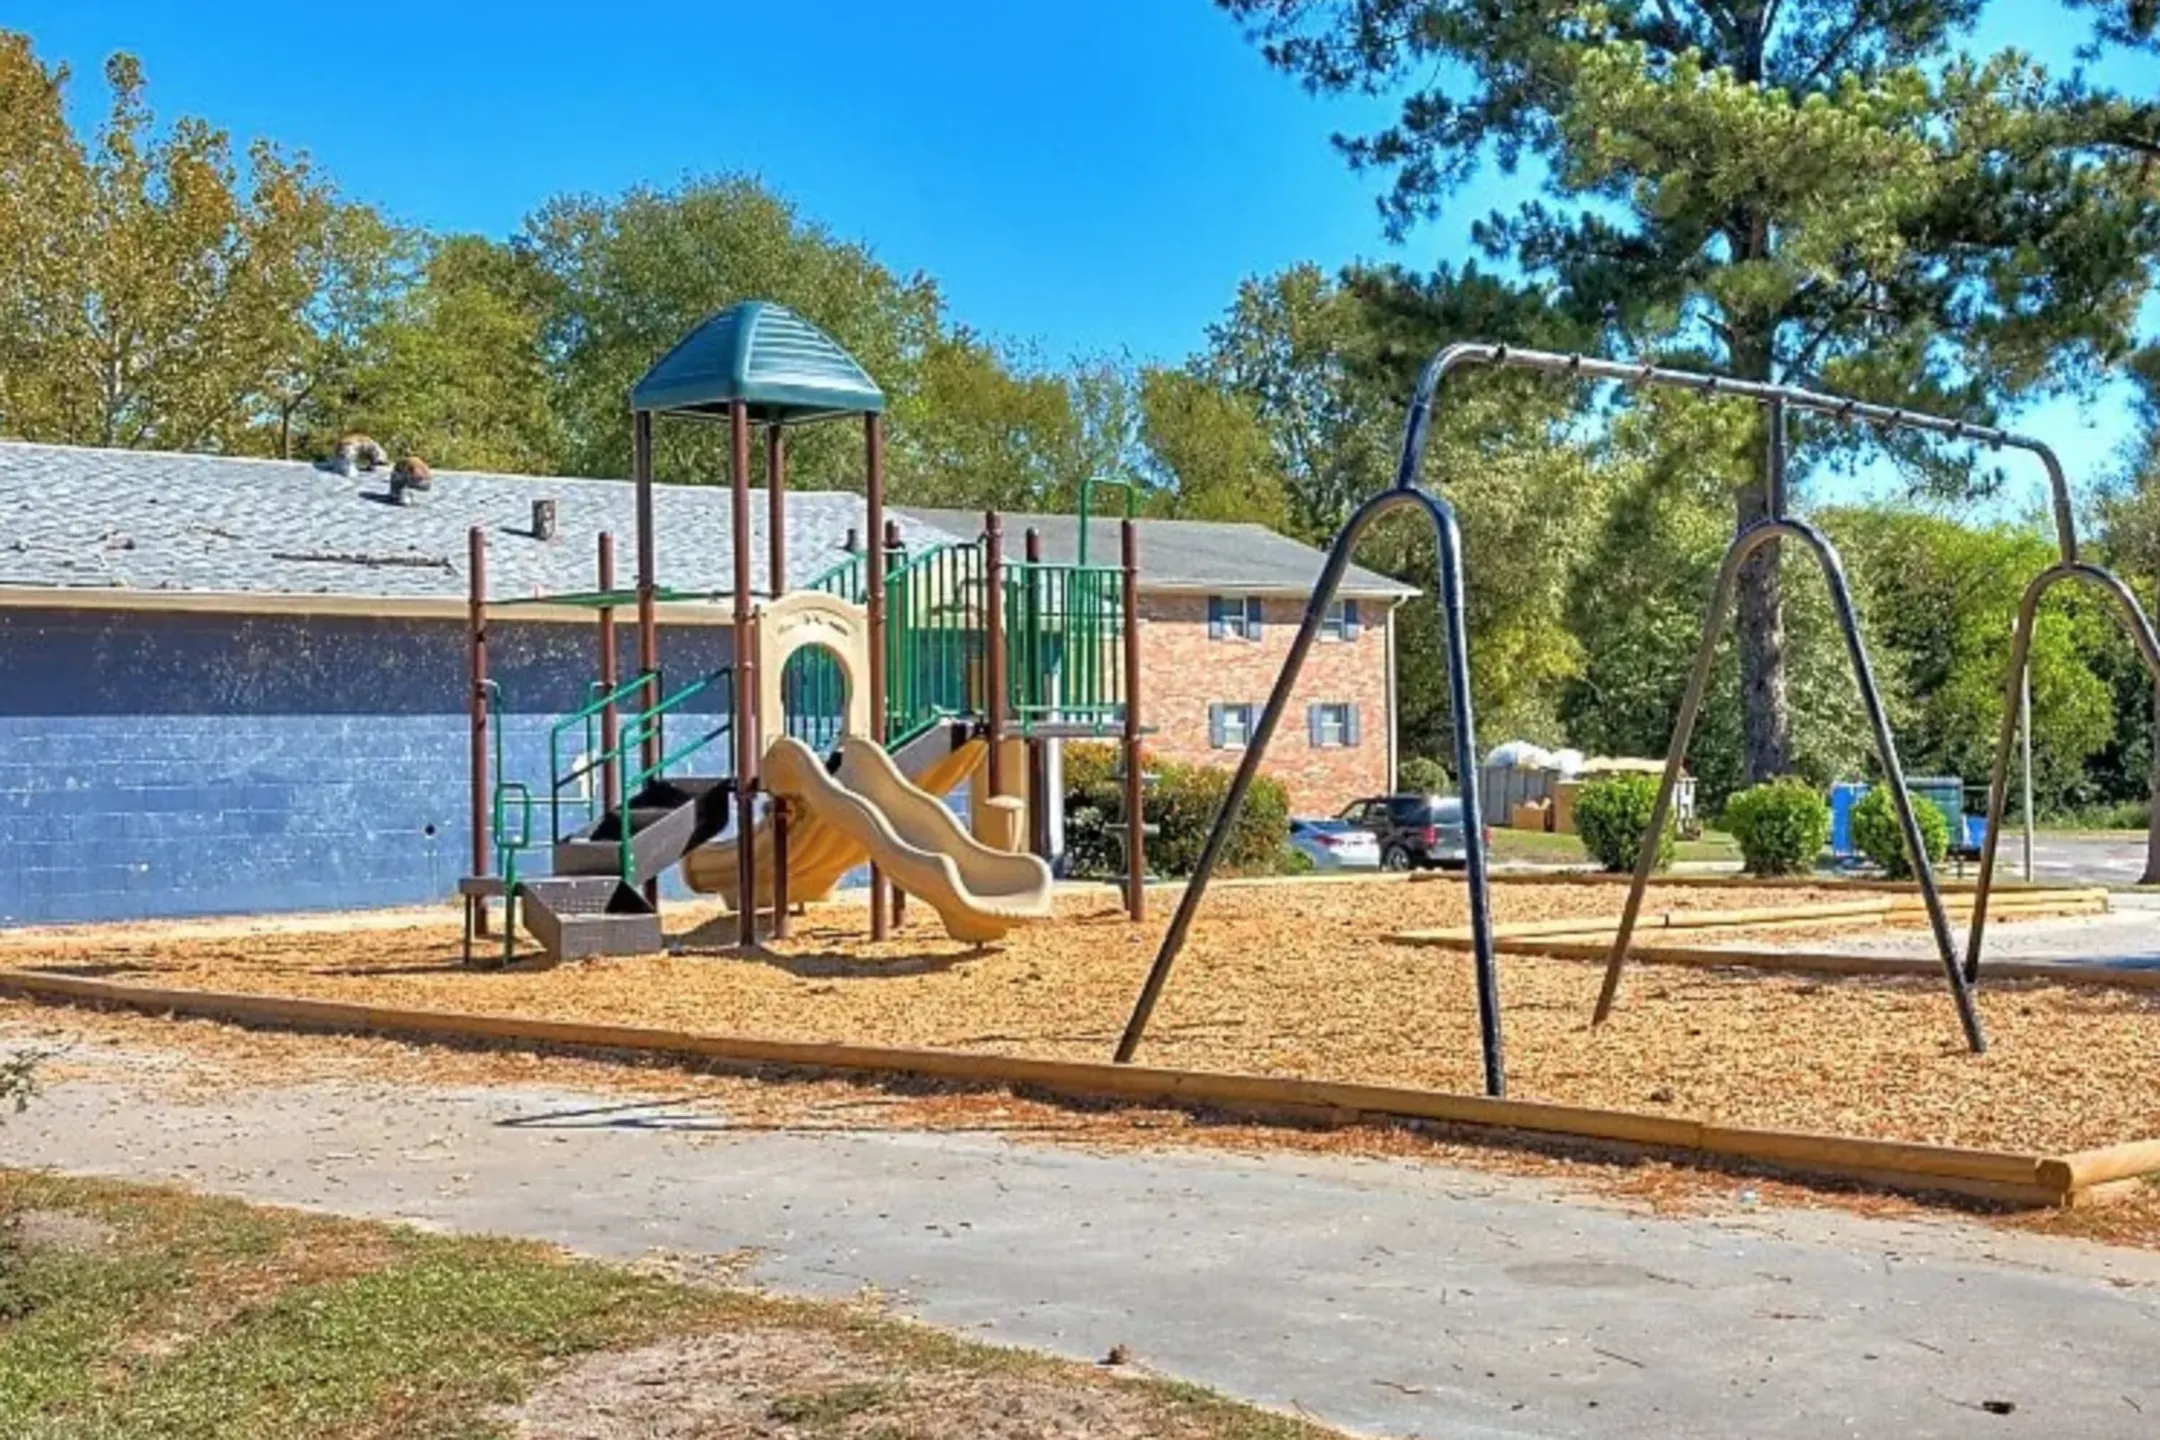 Playground - Azalea Park - Augusta, GA